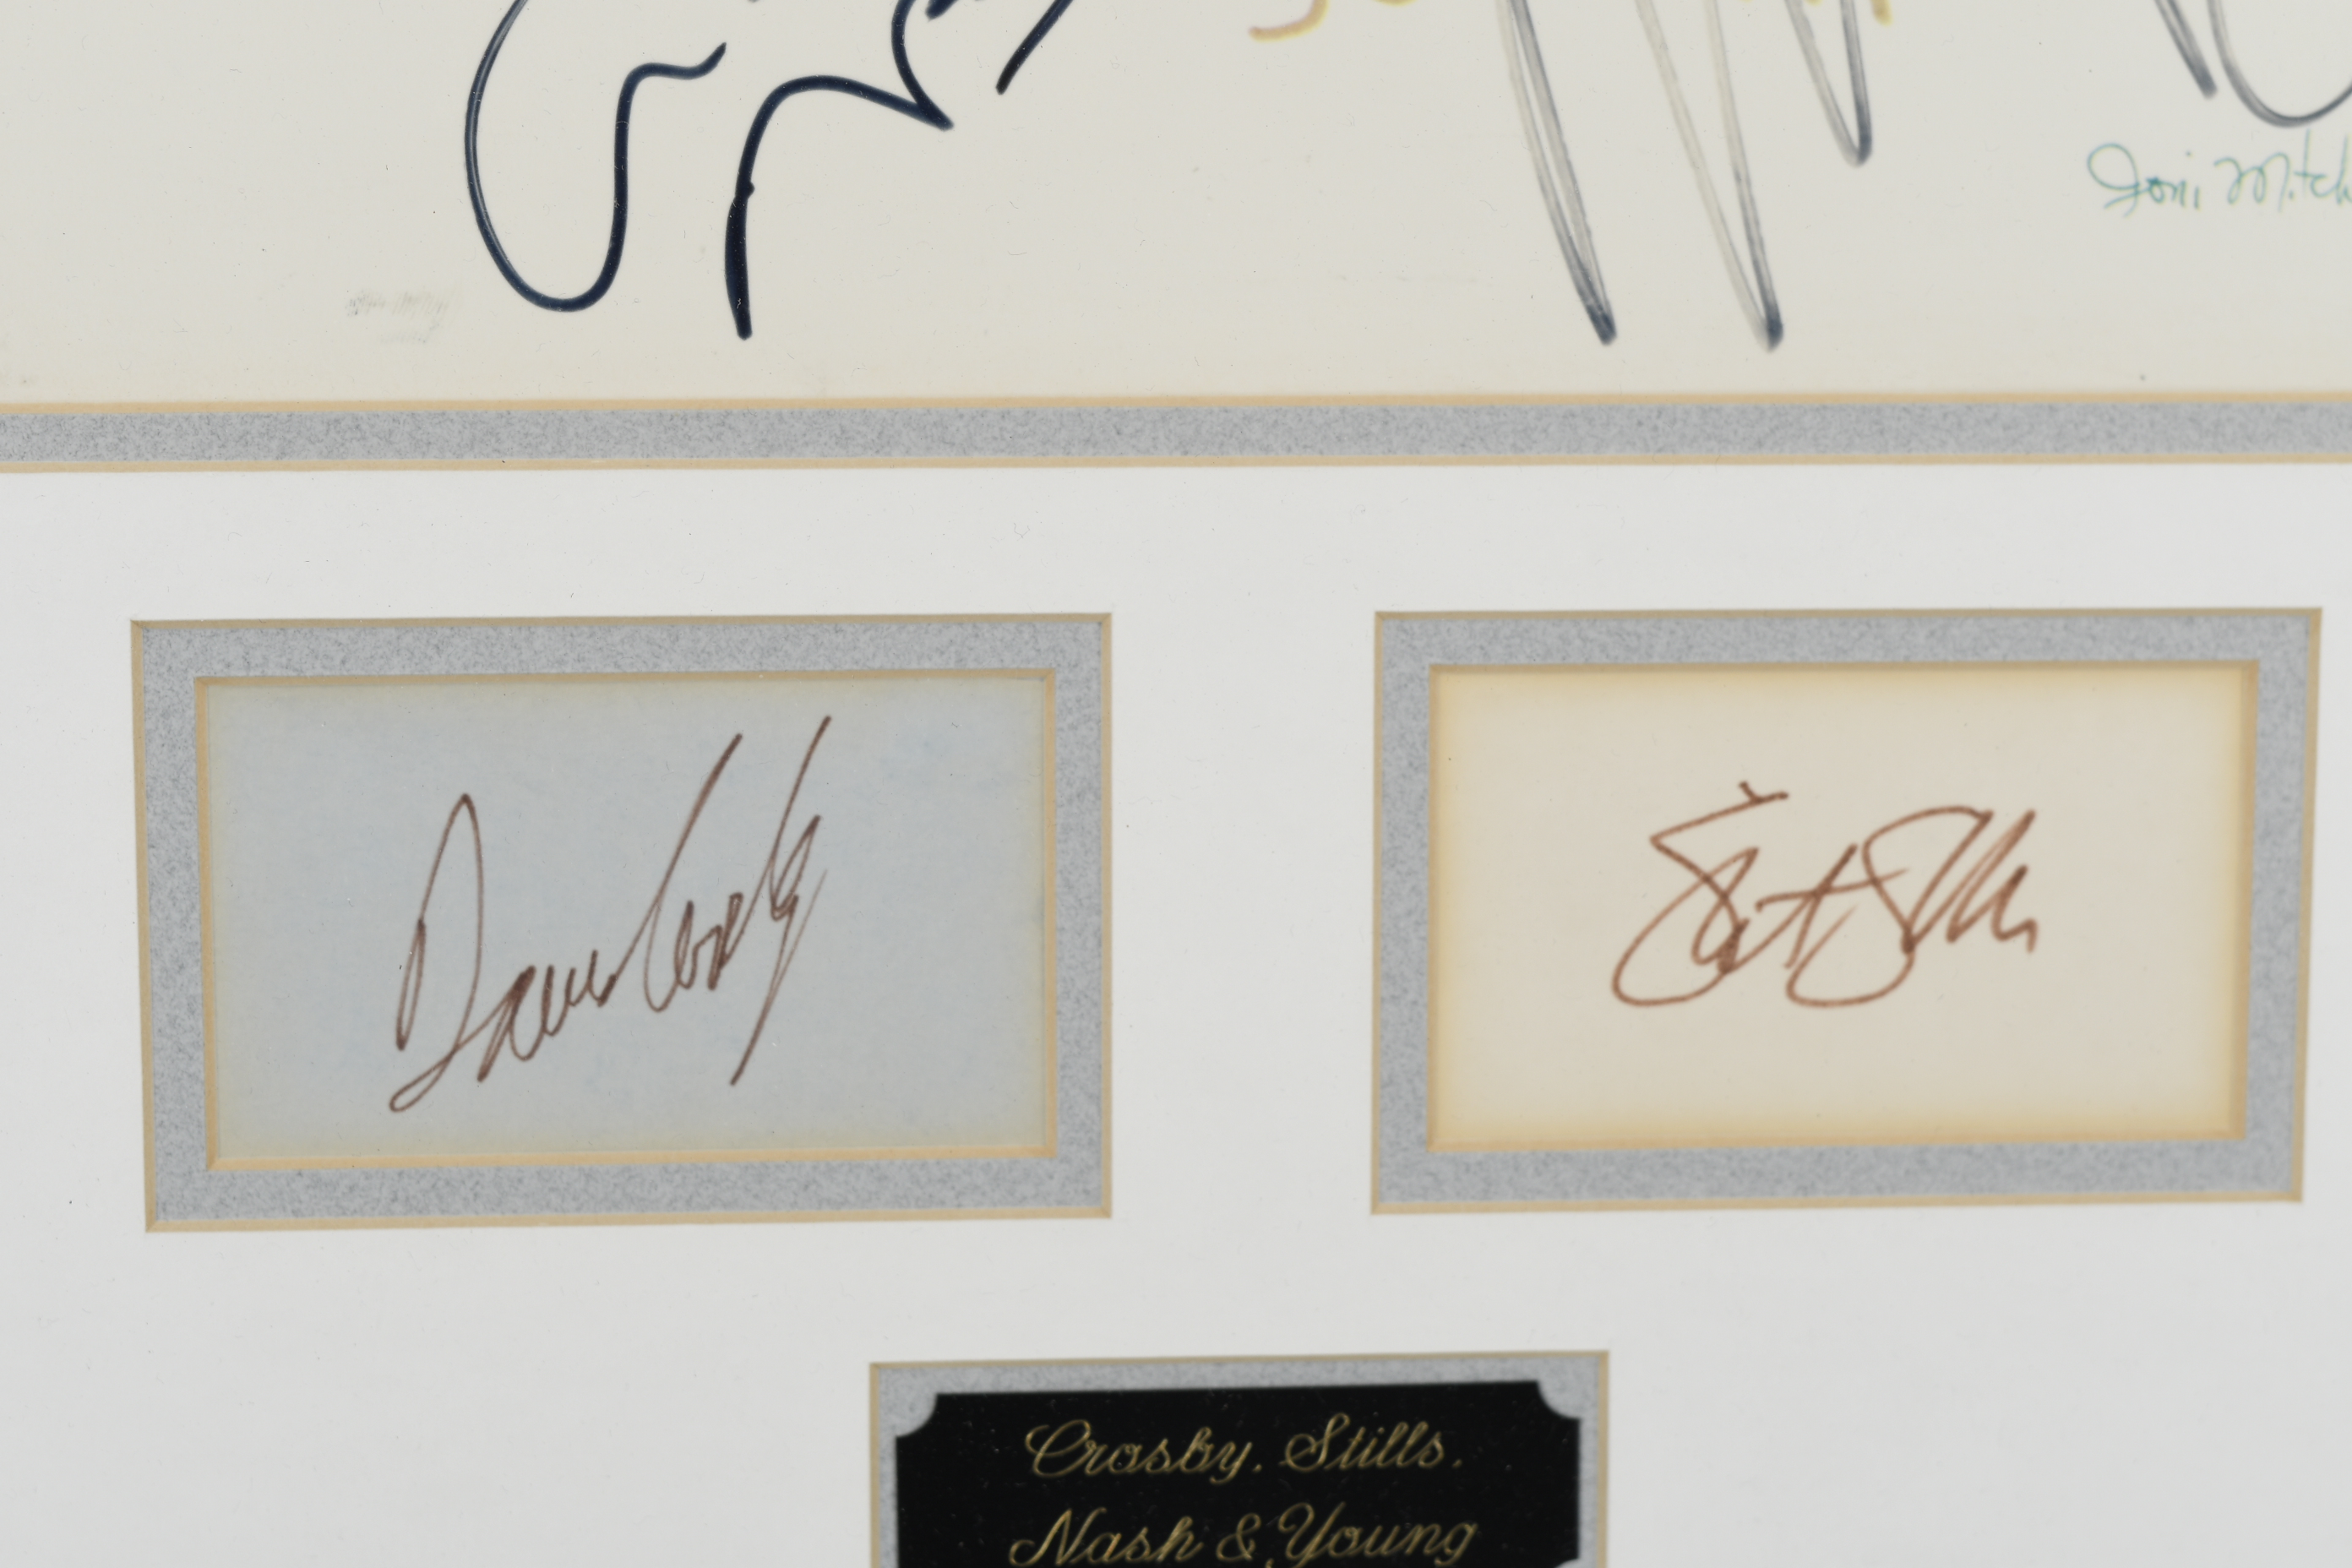 Crosby, Stills, Nash & Young Memorabilia Presentation with Original Signatures. - Image 2 of 4